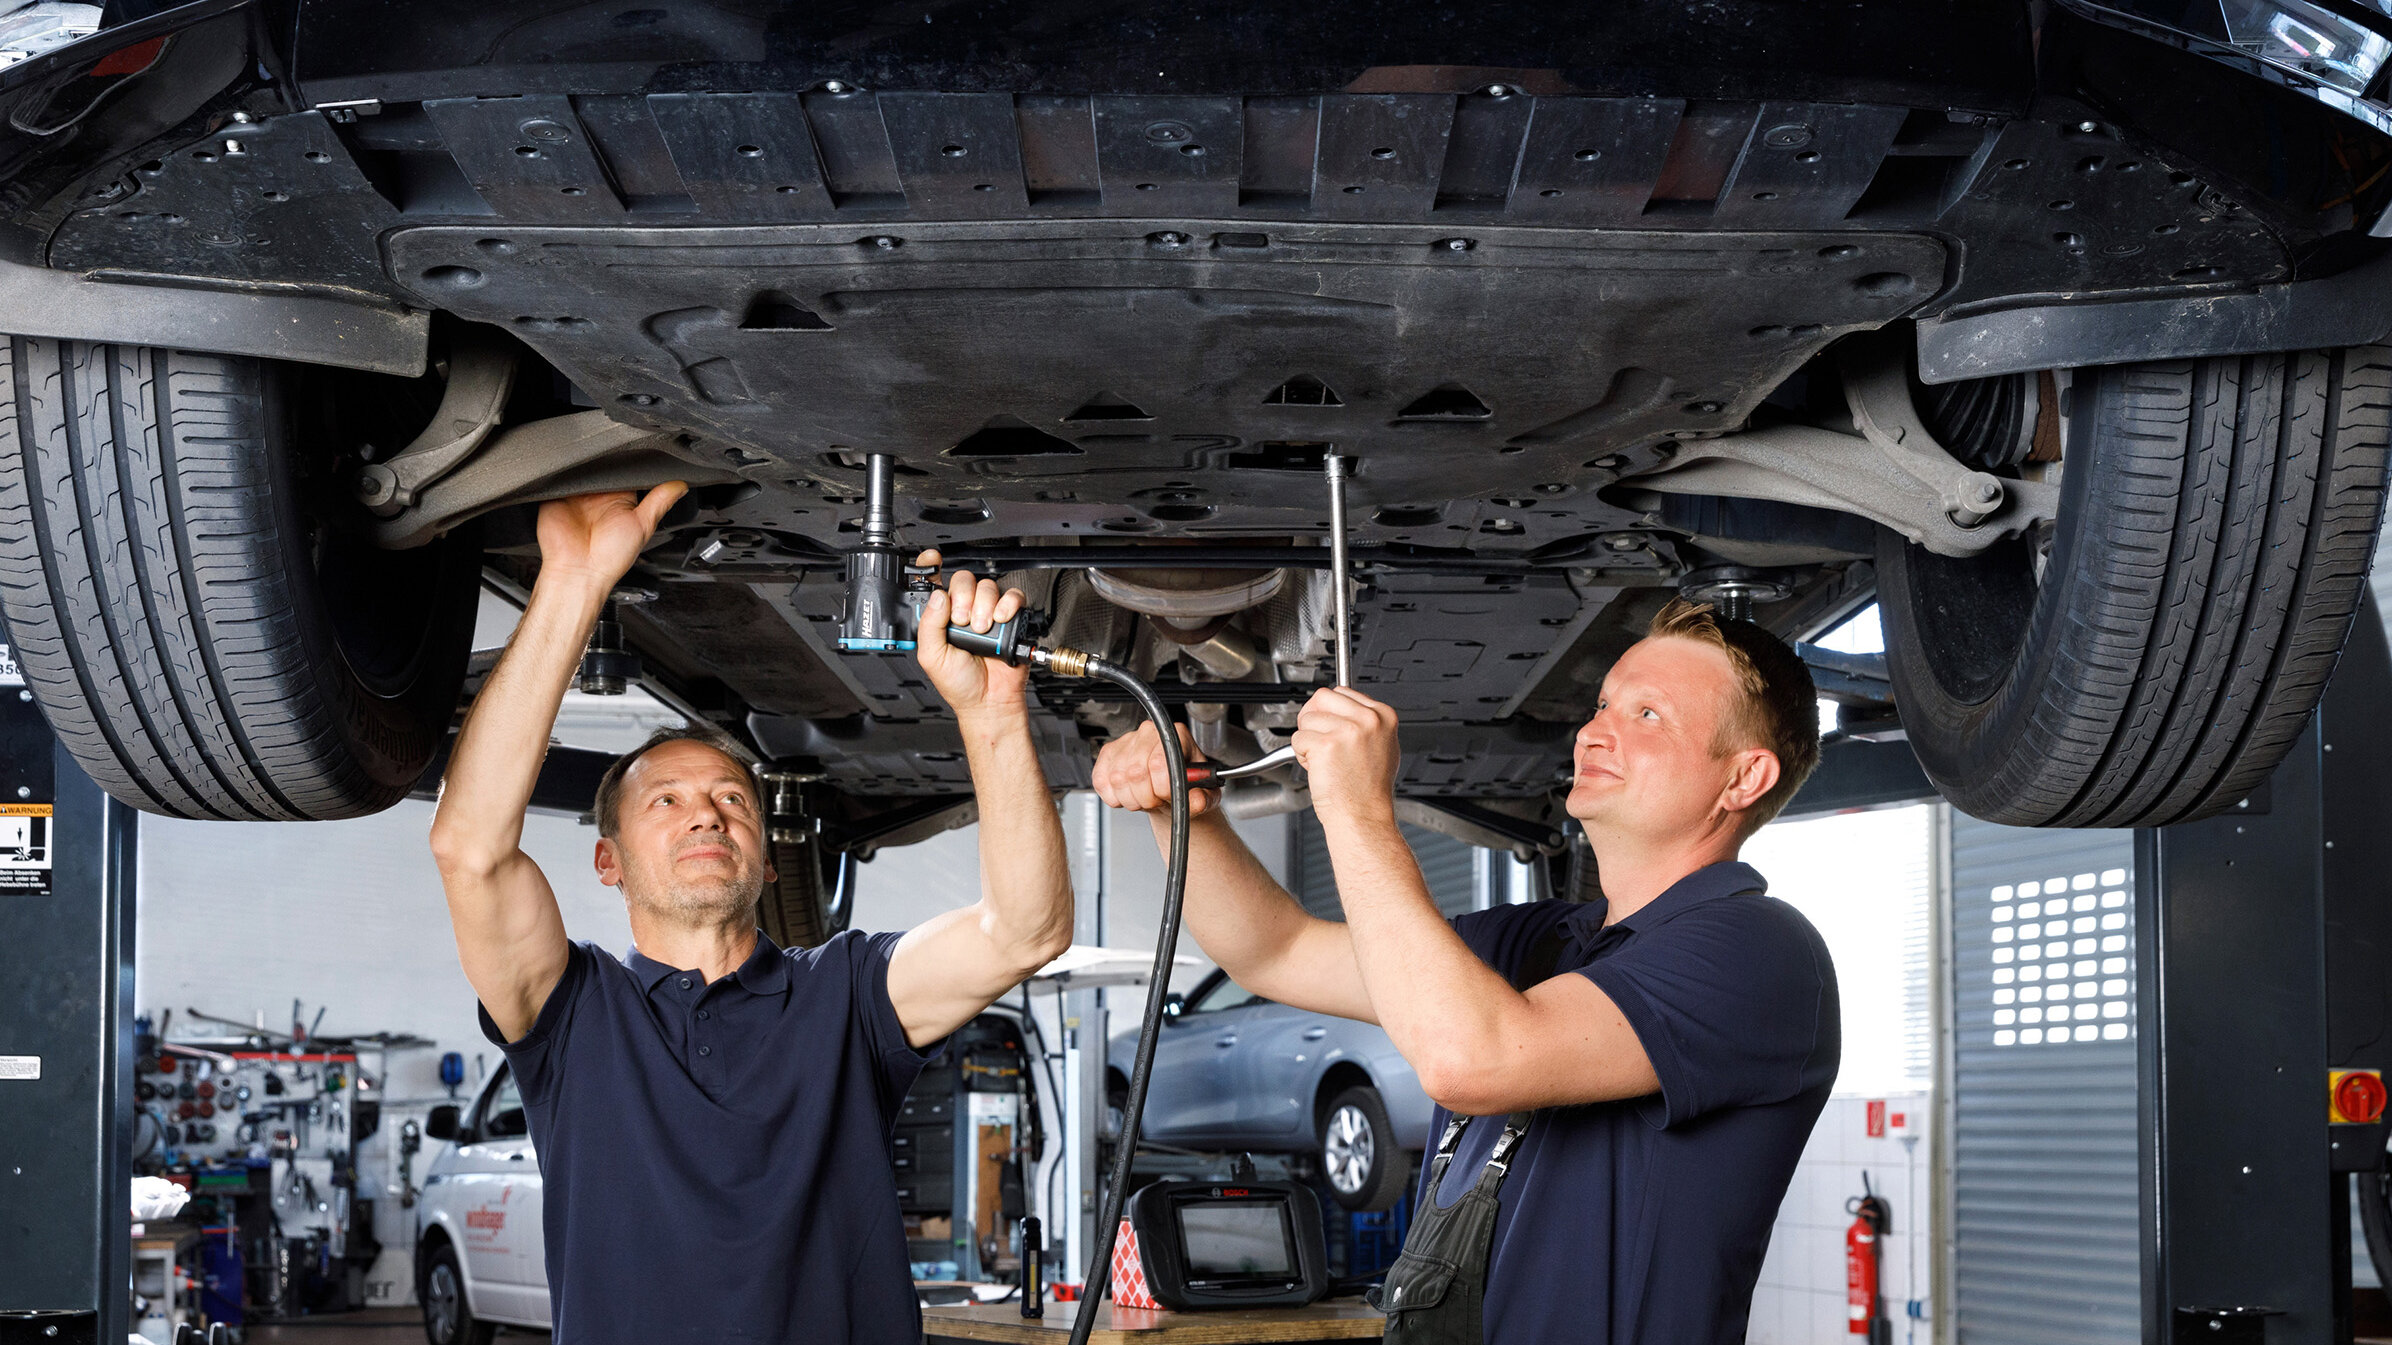 Autoreparaturen und Wartungen – Das Kfz-Mechanik-Team ist erfahren, bestens ausgebildet und repariert alle Fahrzeuge und Modelle.